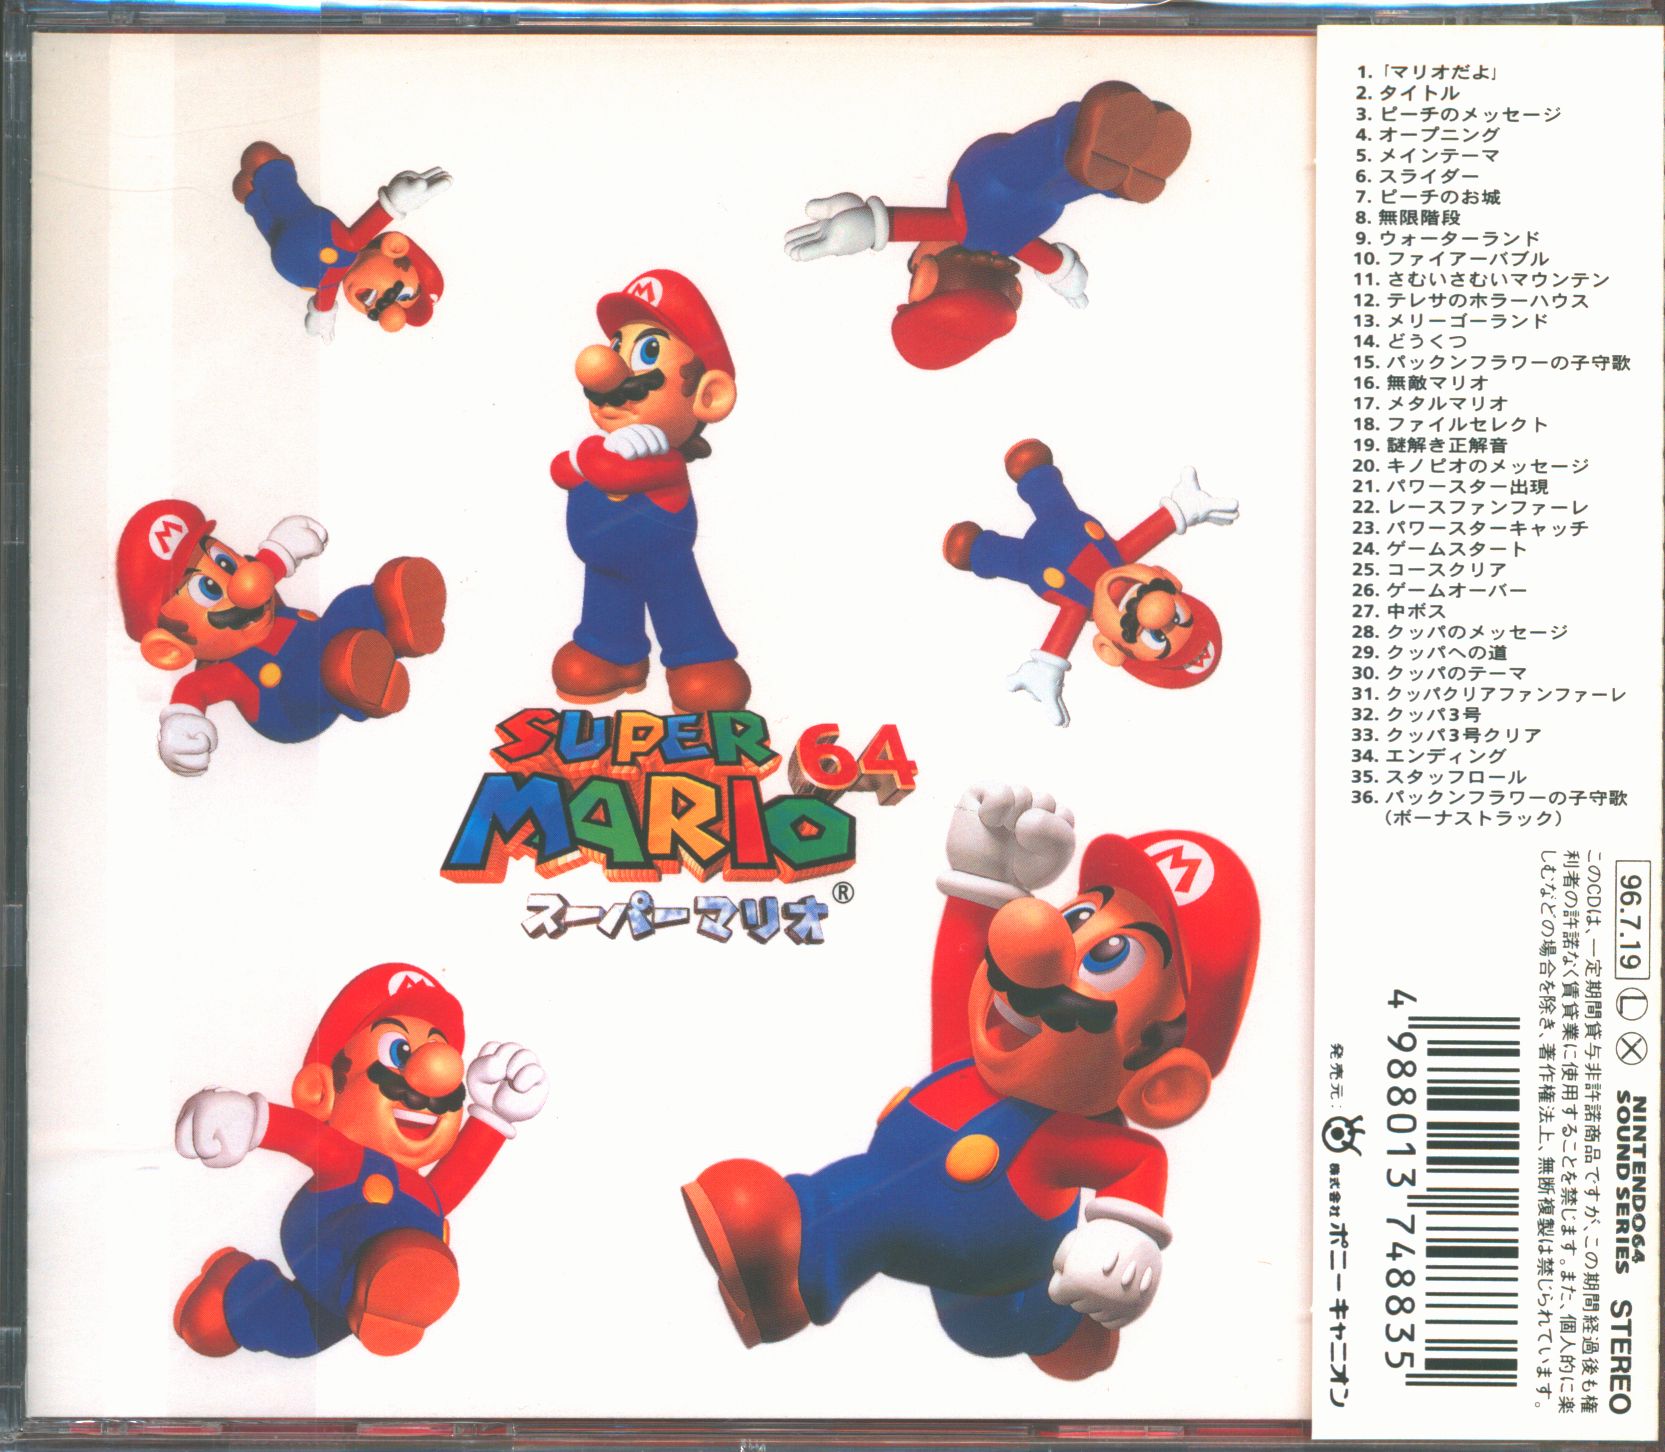 スーパーマリオ64 オリジナルサウンドトラック - CD